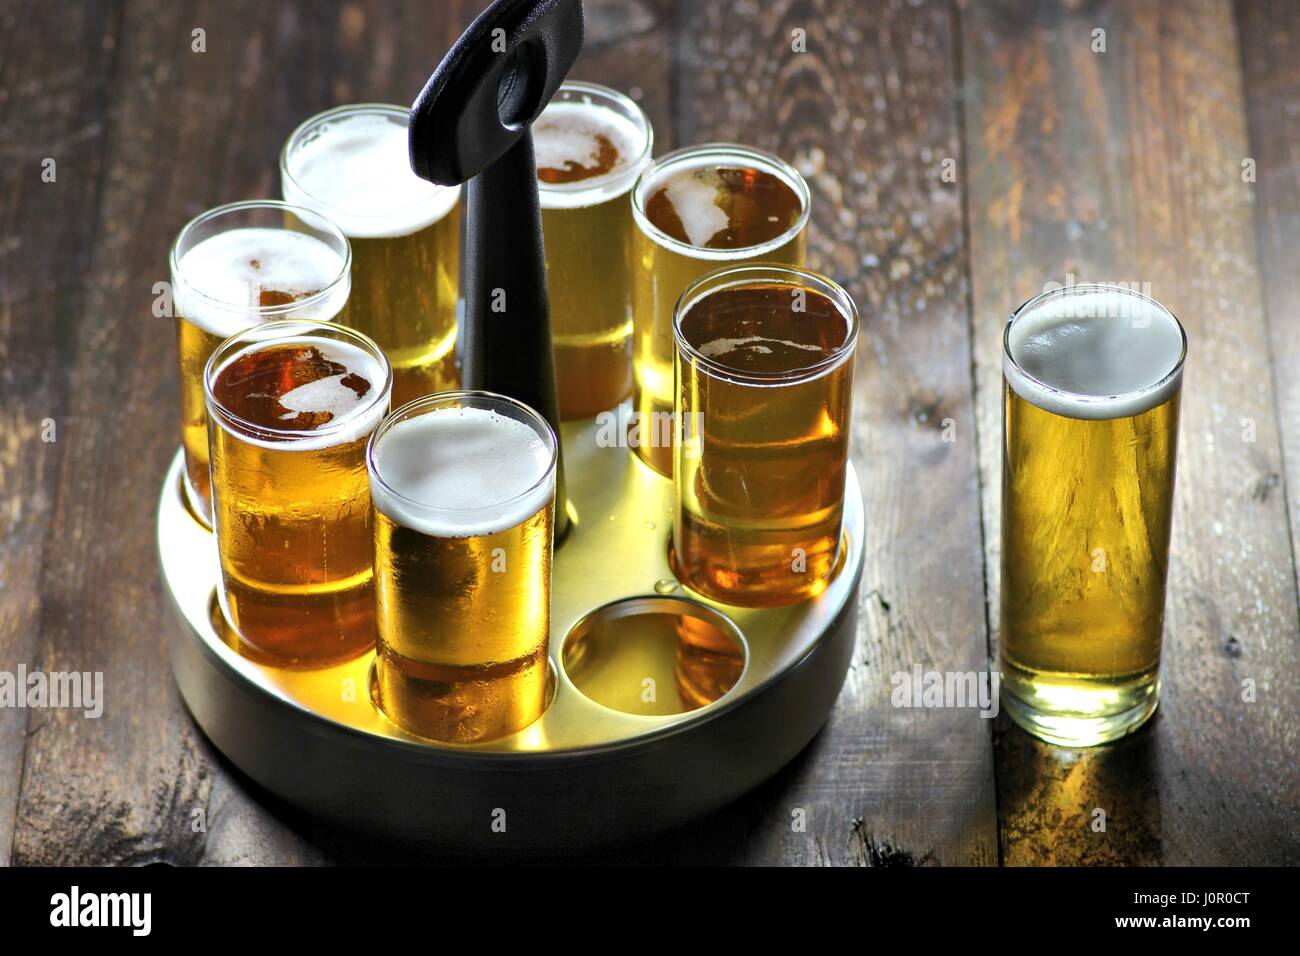 Kölsch - Bier-Spezialität aus Köln in einem typischen Tablett auf hölzernen Hintergrund Stockfoto